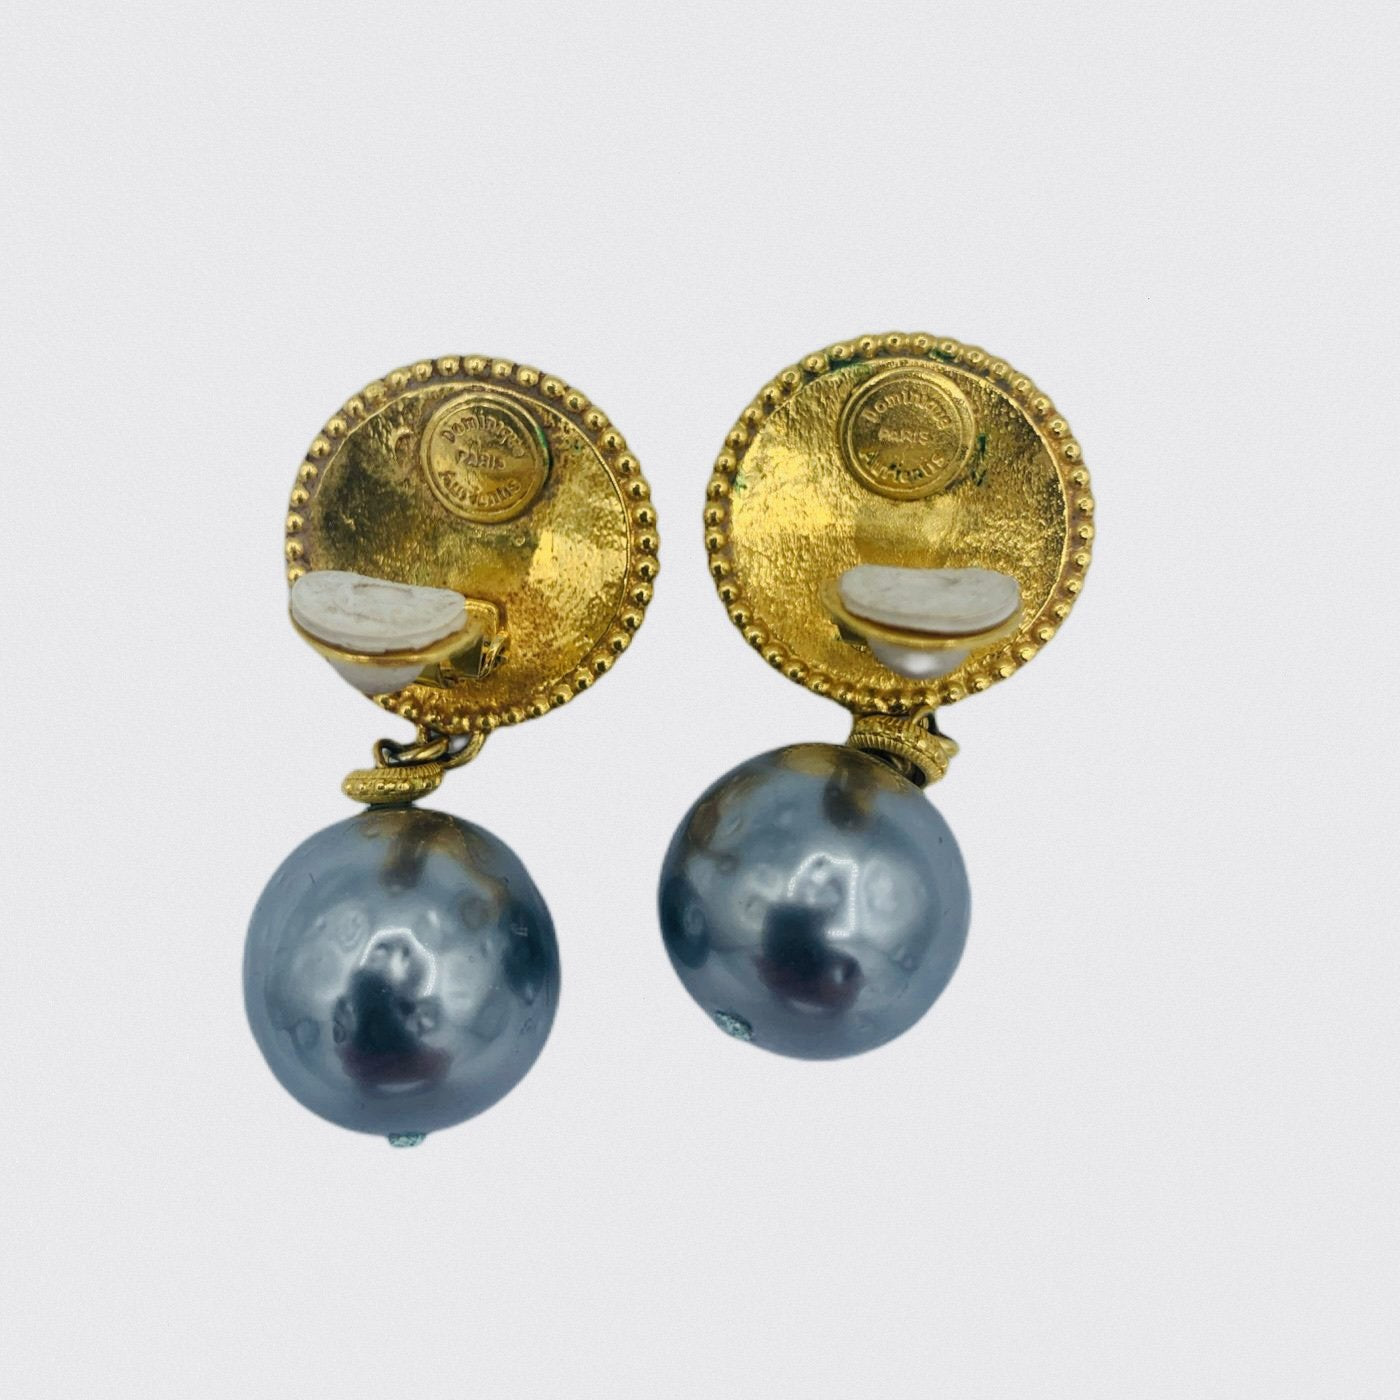 Lysis vintage Dominique Aurientis earrings - 1990s